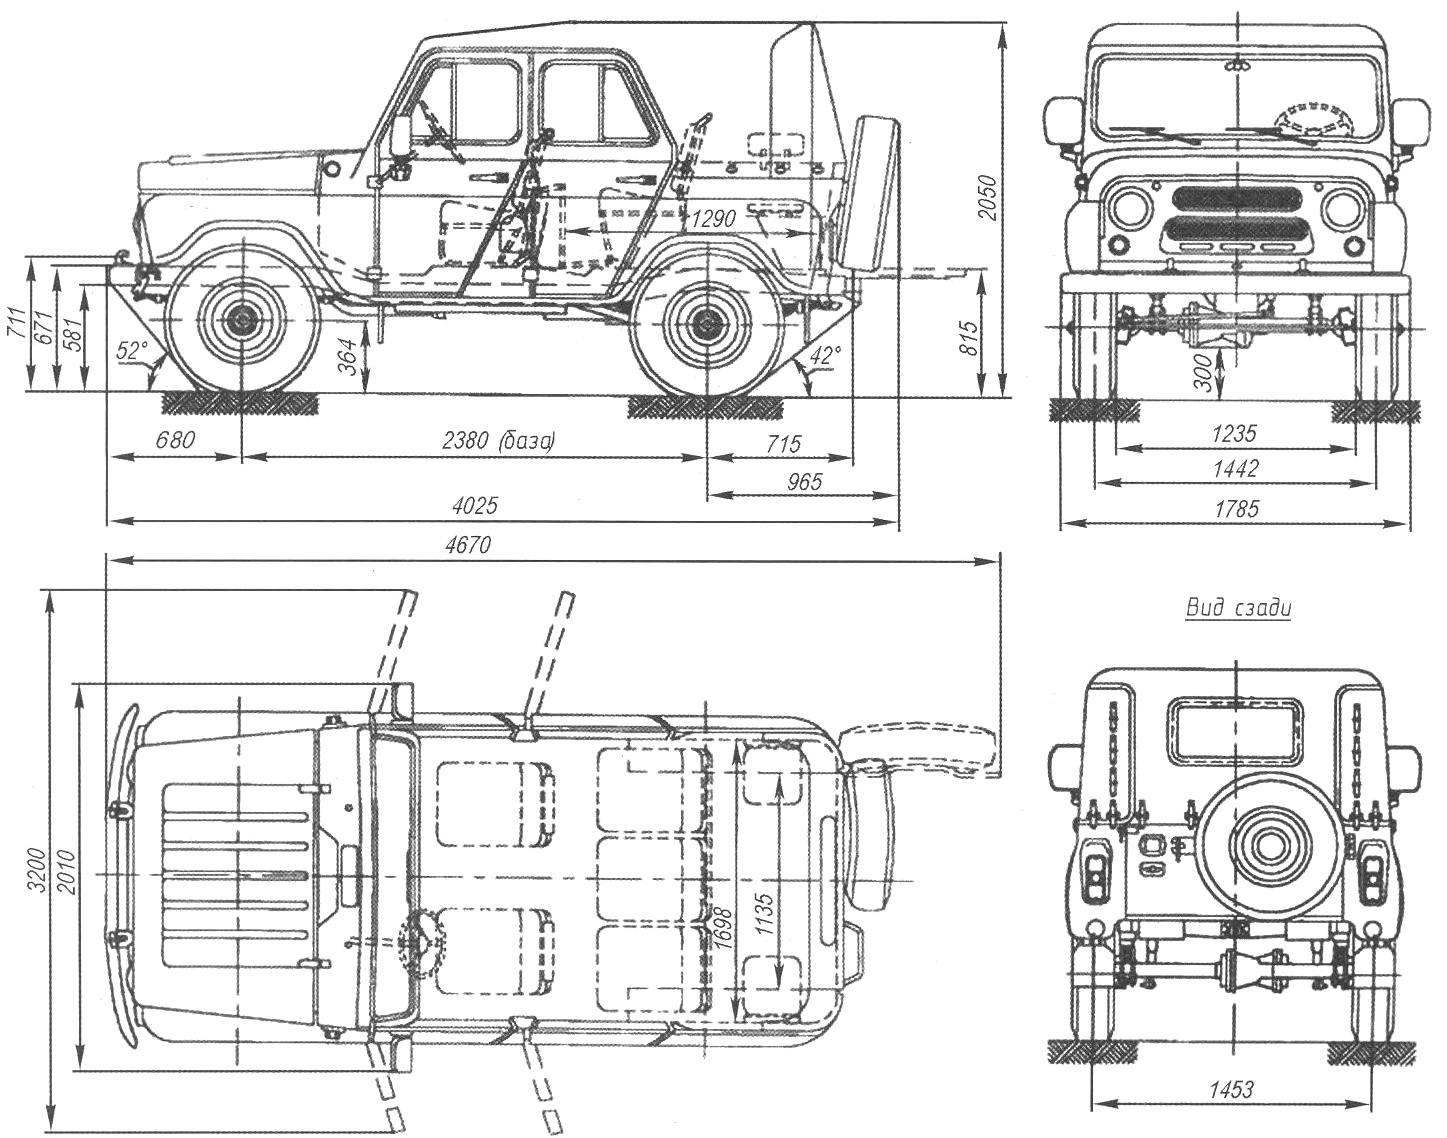 Основные размеры УАЗ-469 (УАЗ-31512) — армейского вездехода с бортовыми редукторами и брезентовым верхом кузова